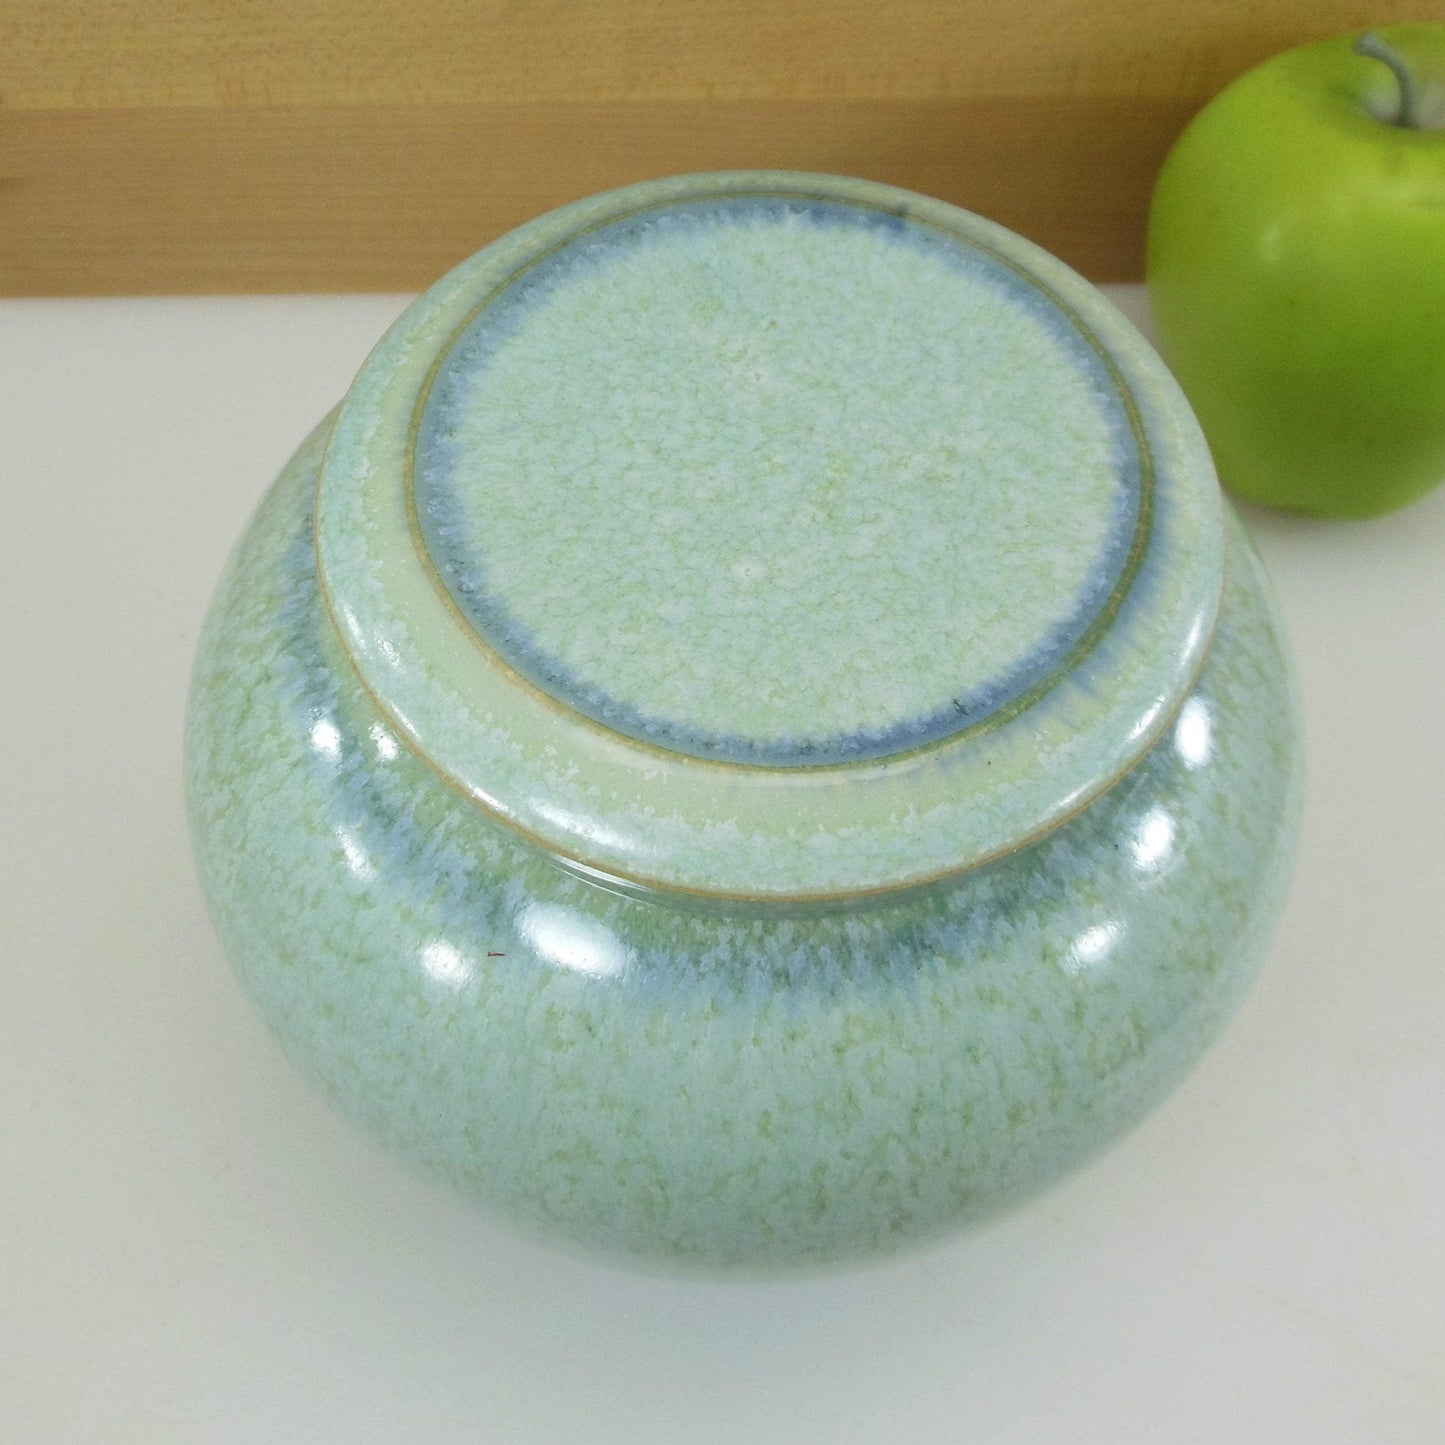 Signed Art Studio Pottery 1991 Lidded Jar Pot Blue/Green Vintage